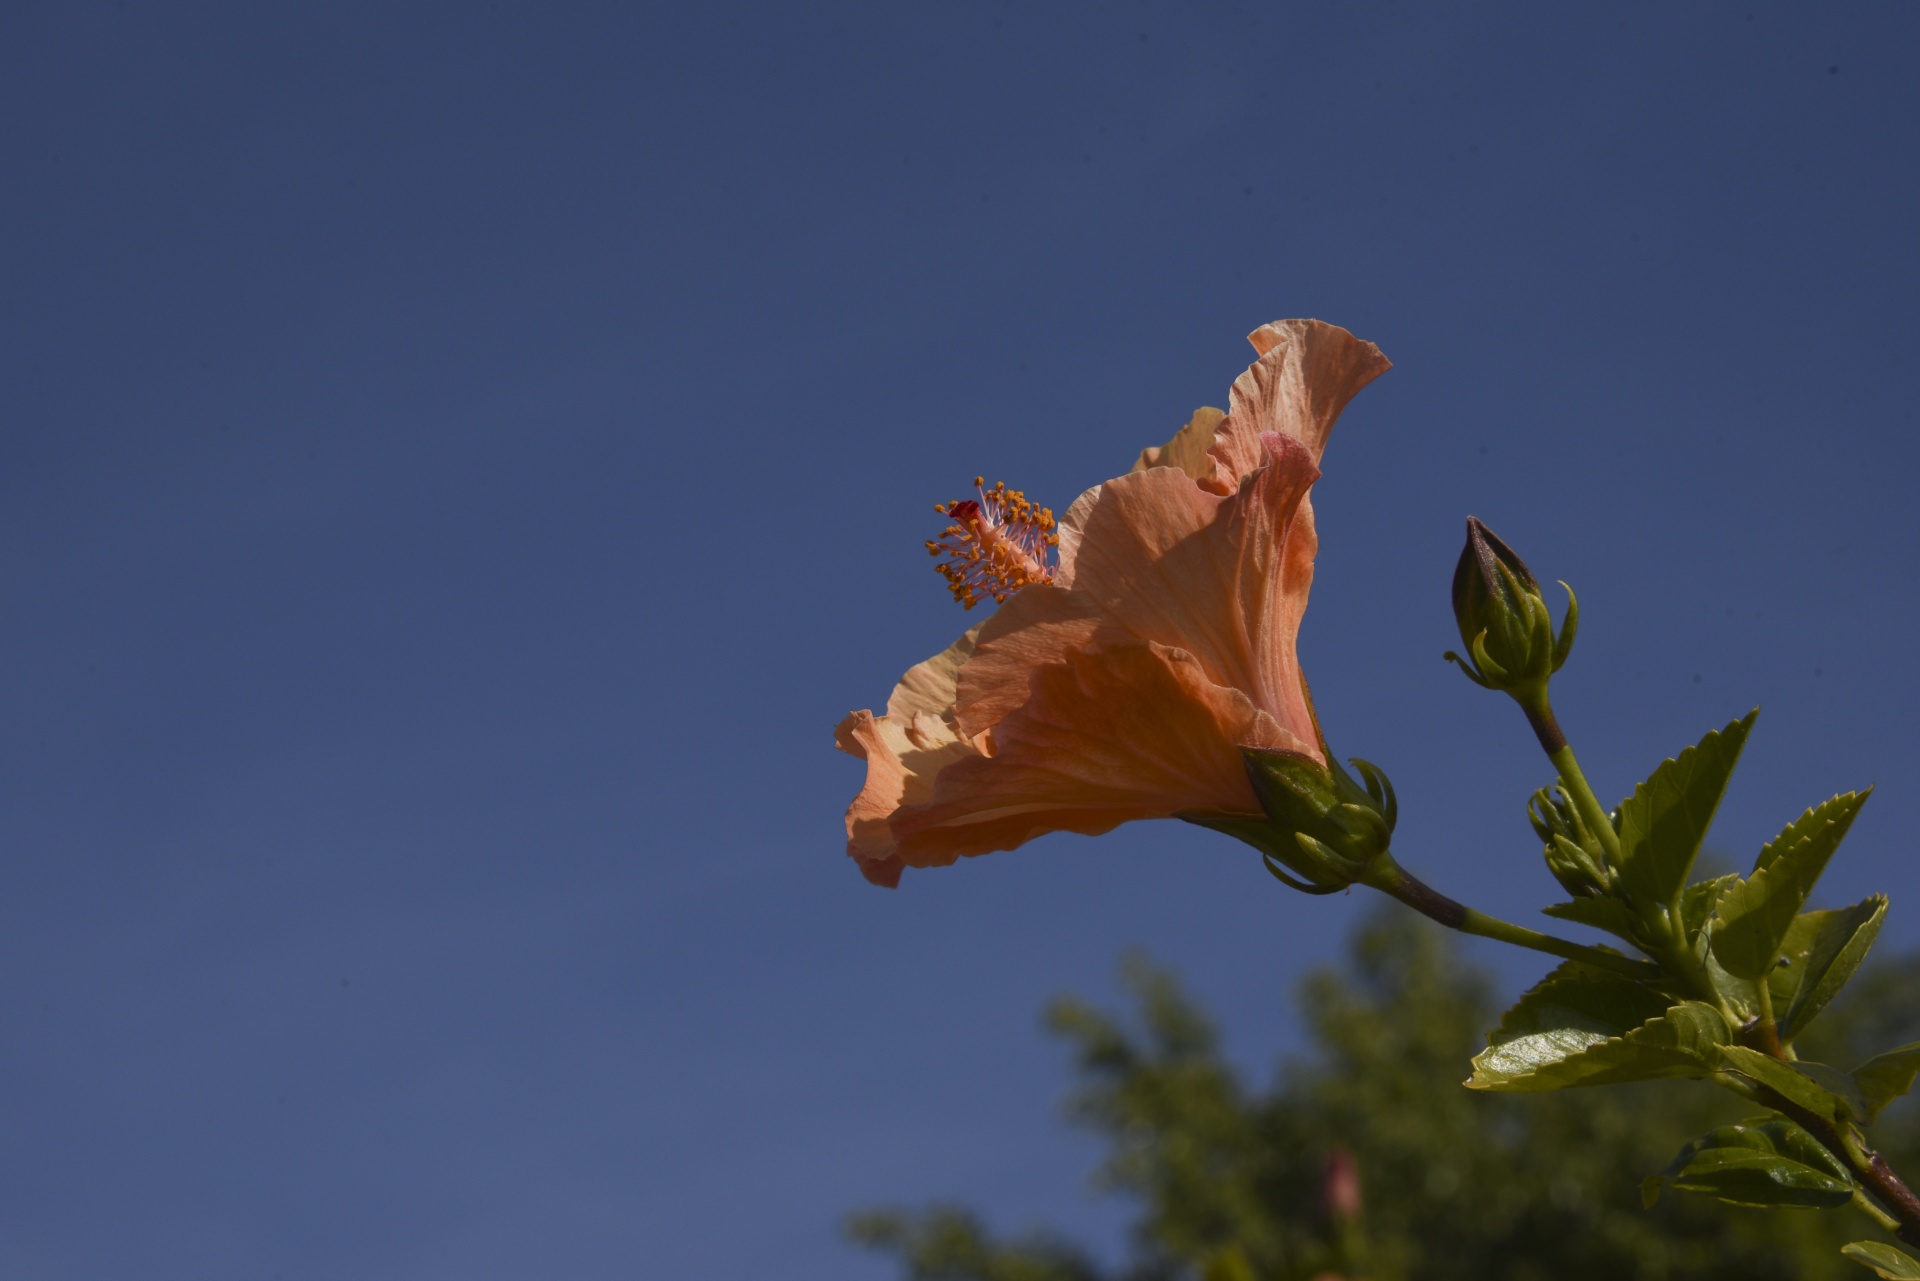 Hibiscus alaranjado